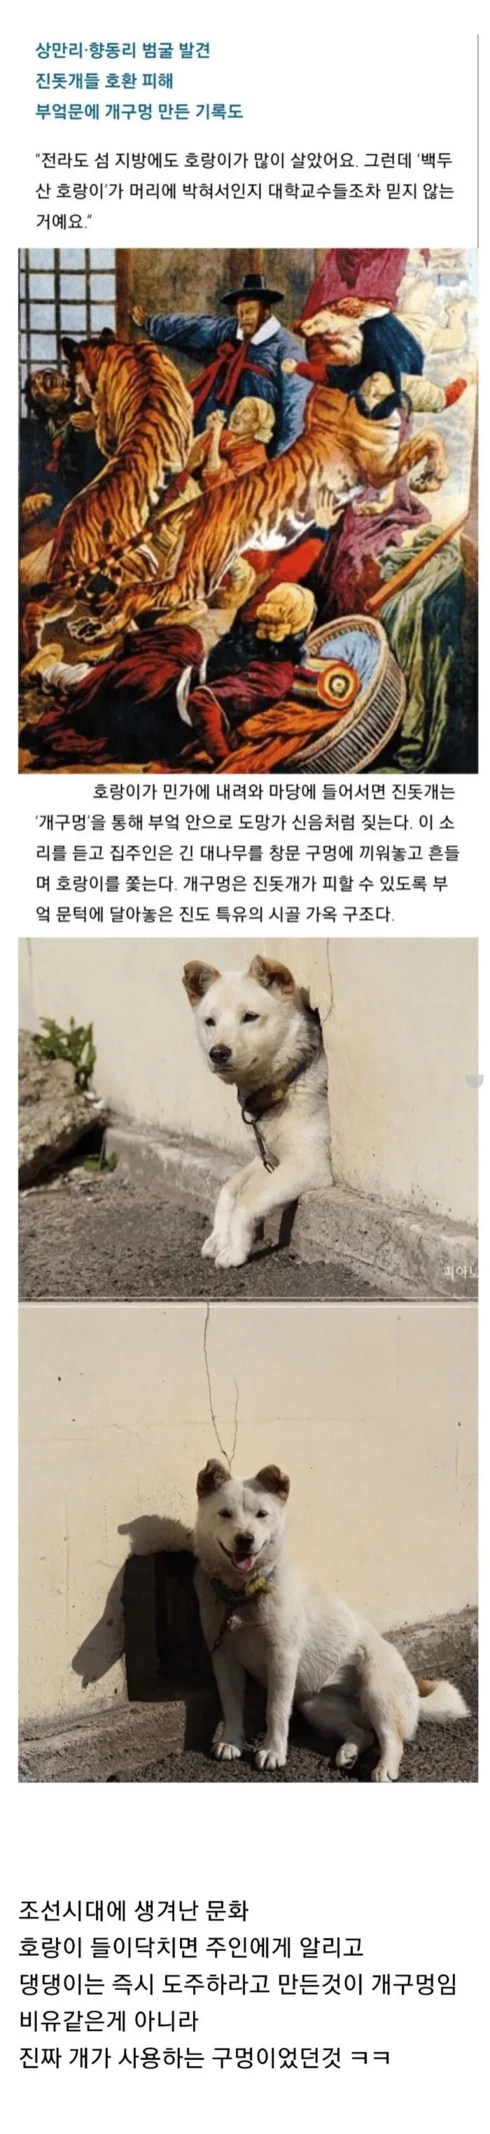 개구멍이 한국의 유서깊은 가옥구조인 이유 | 인스티즈